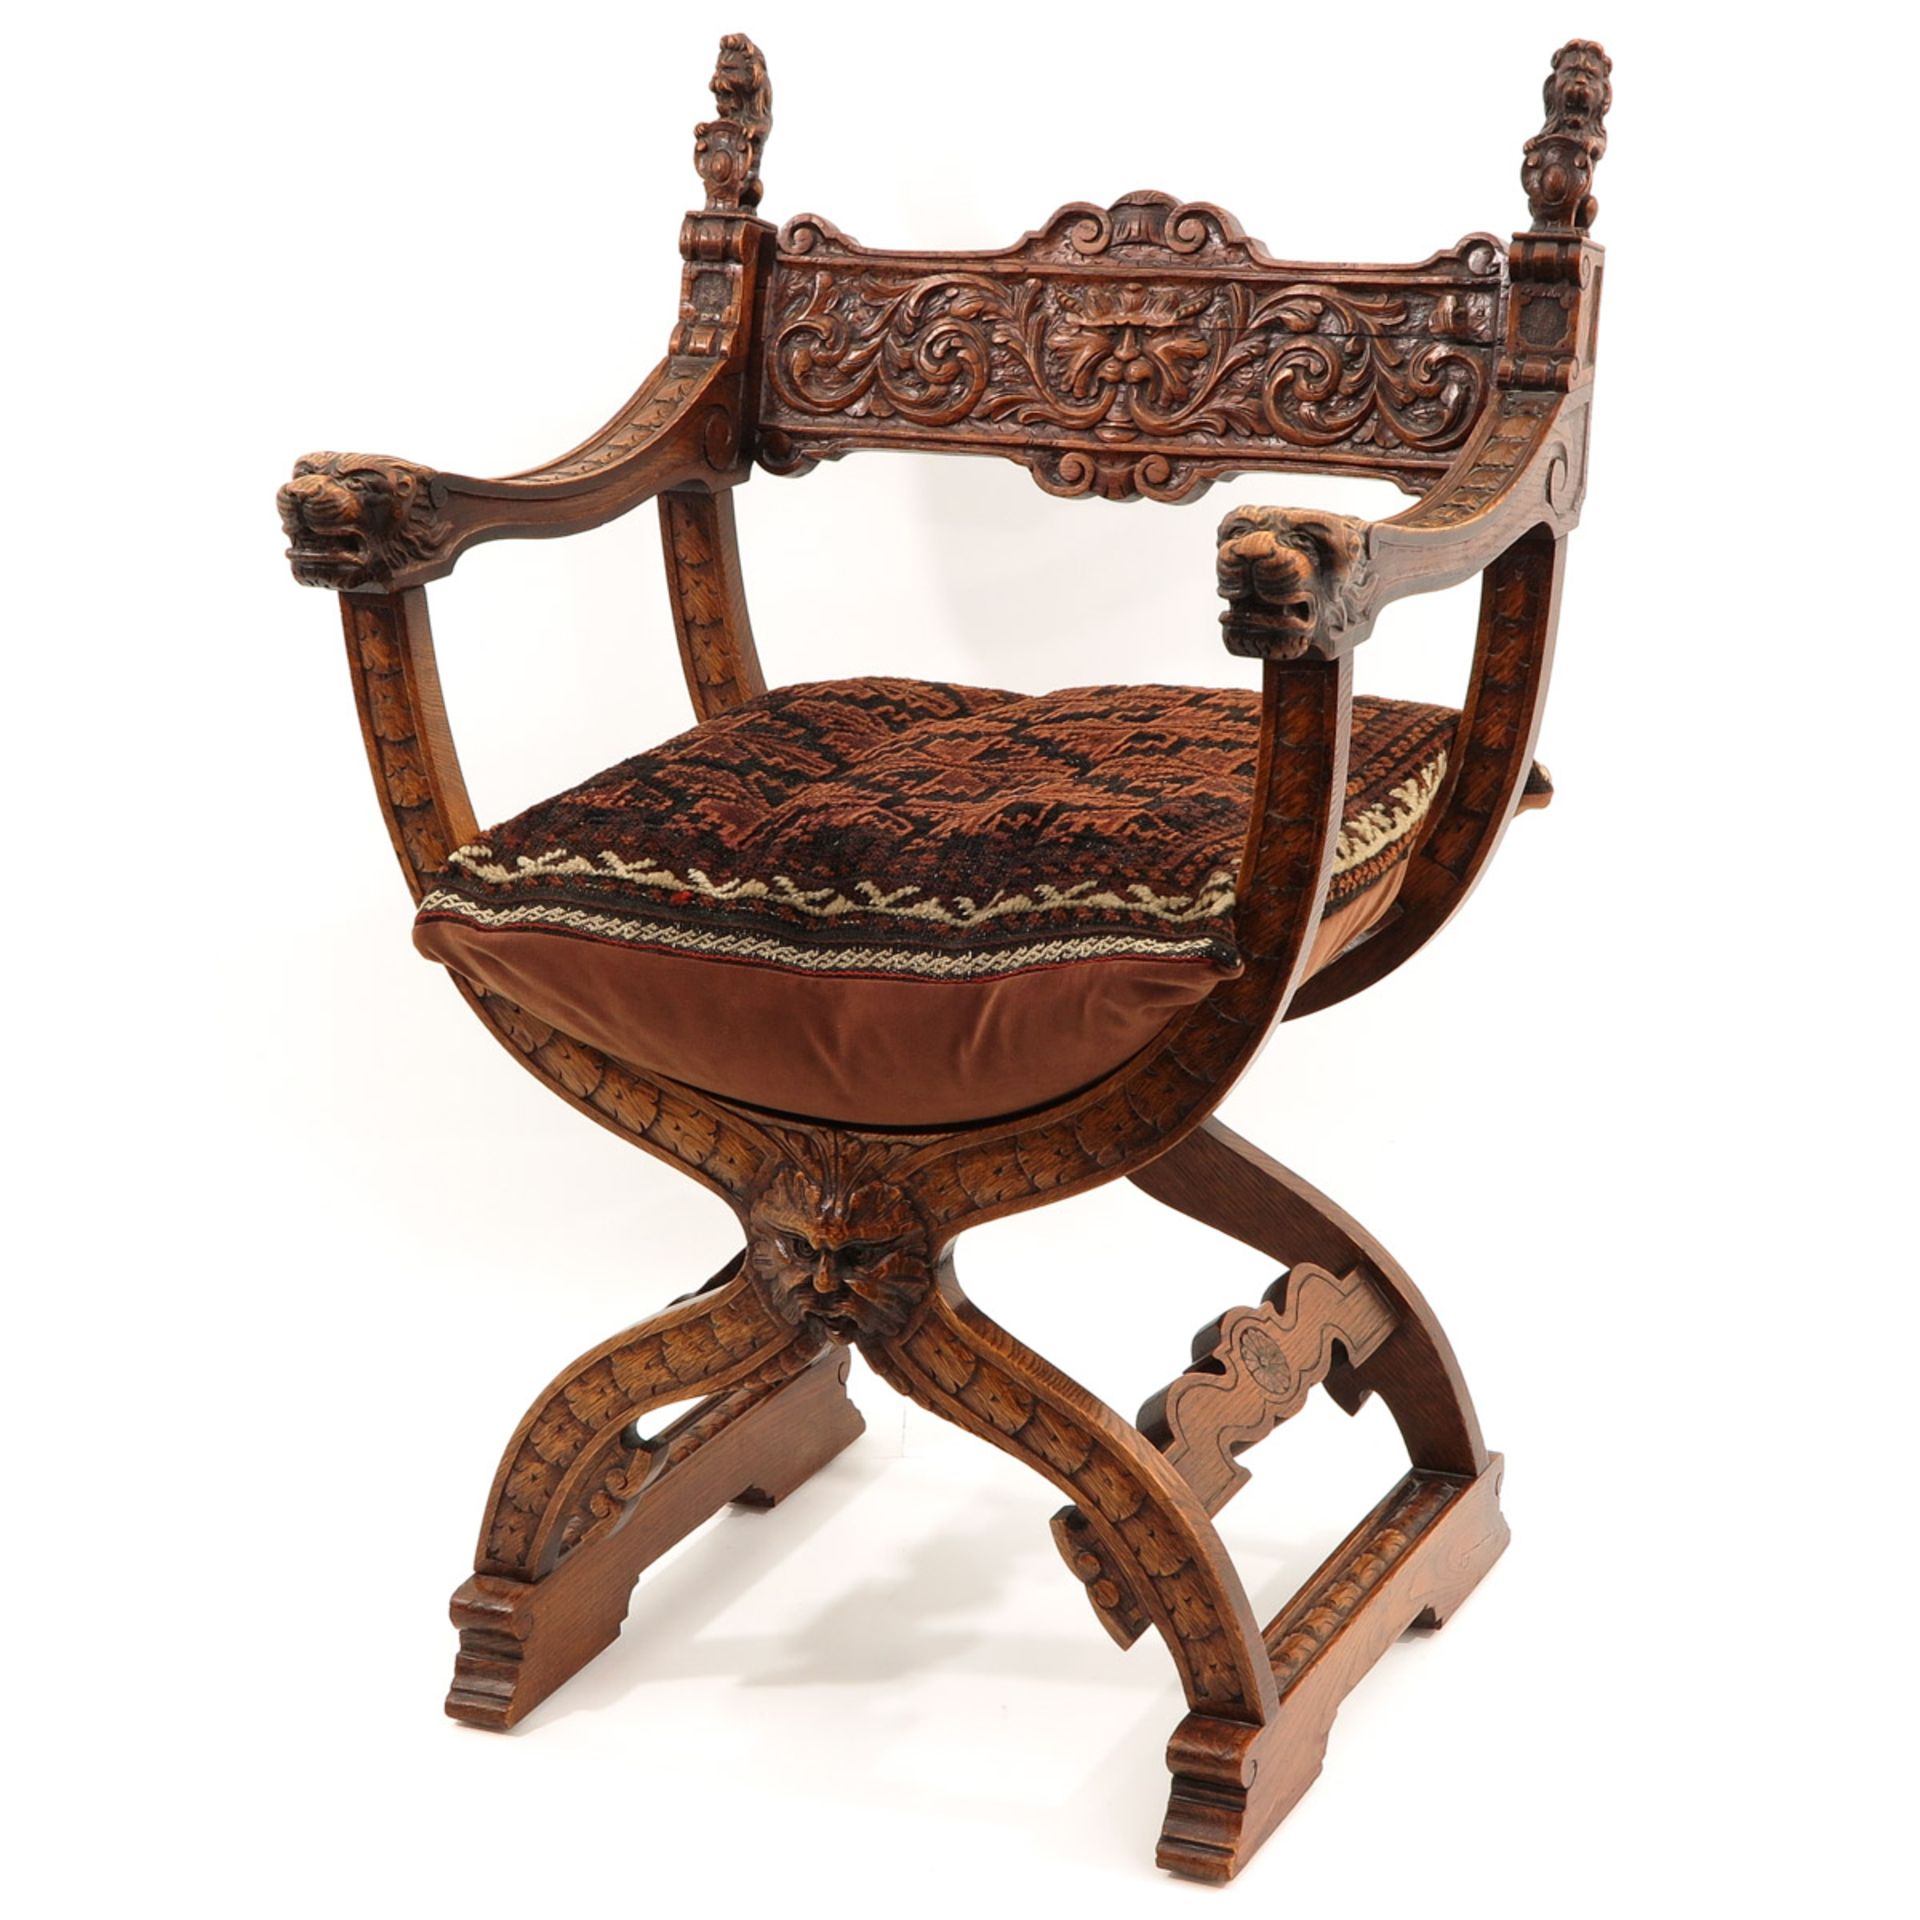 A Dagobert Chair